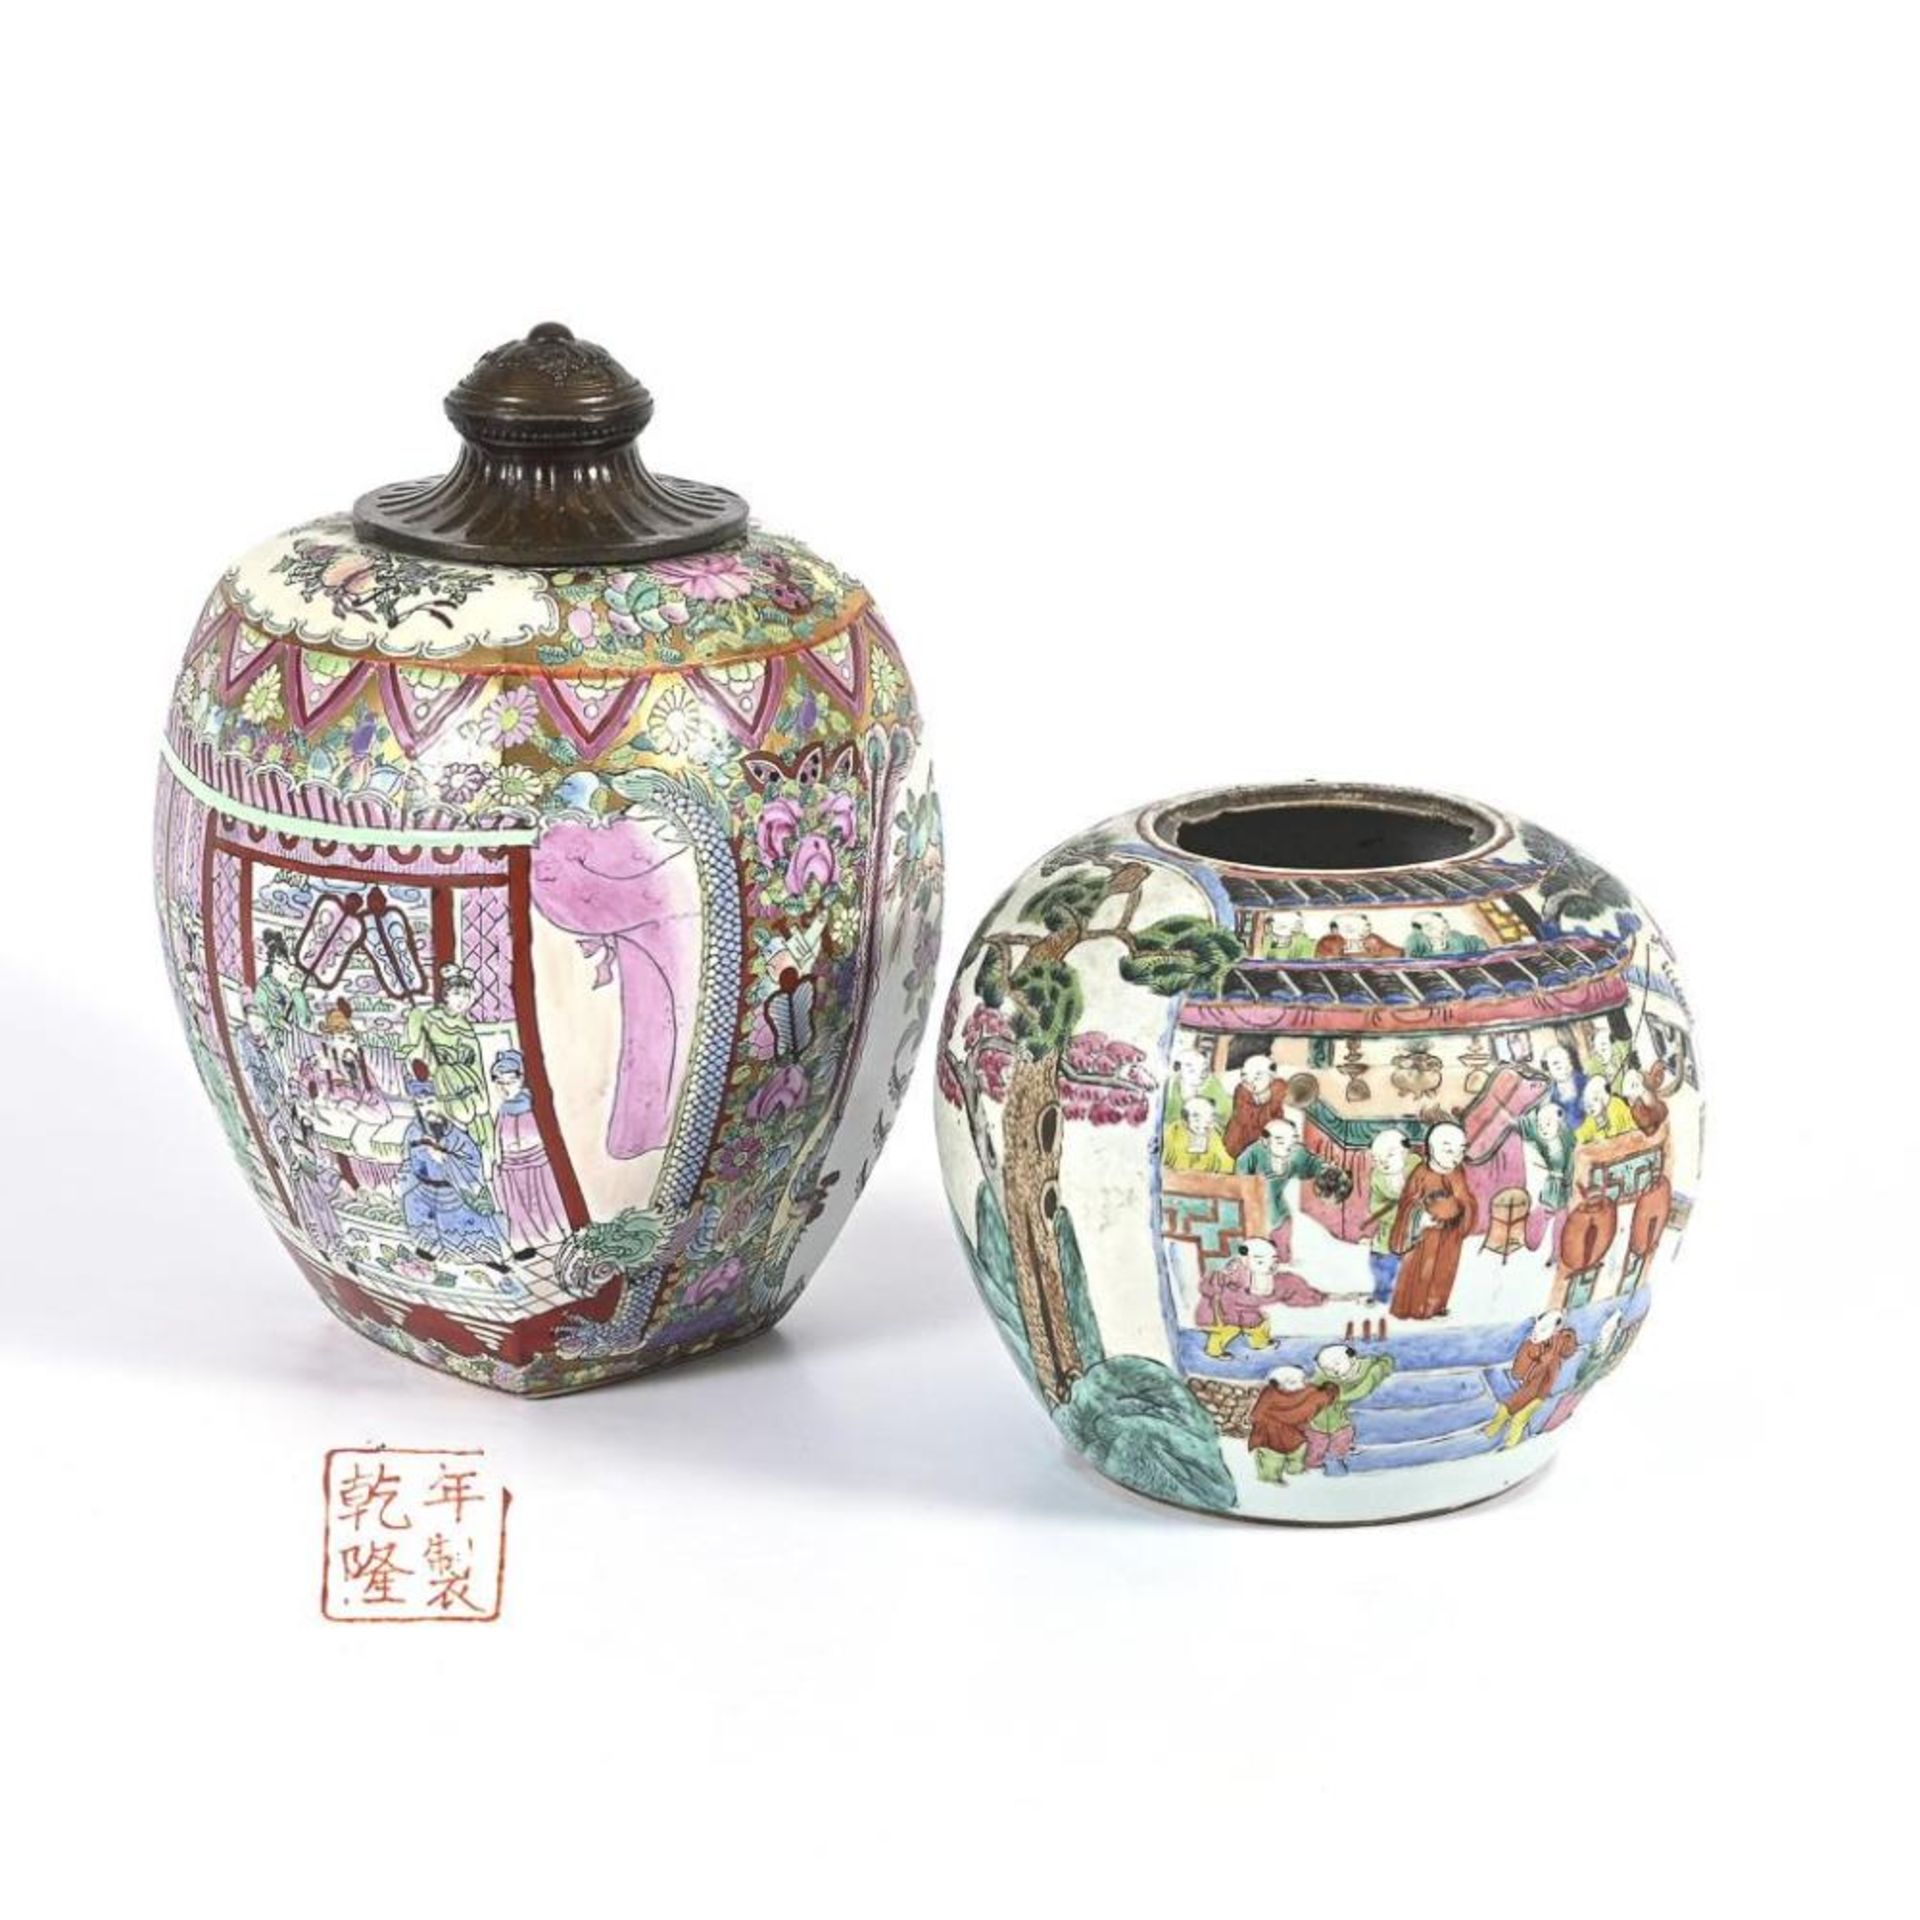 2 asiatische Vasen mit reicher Bemalung.